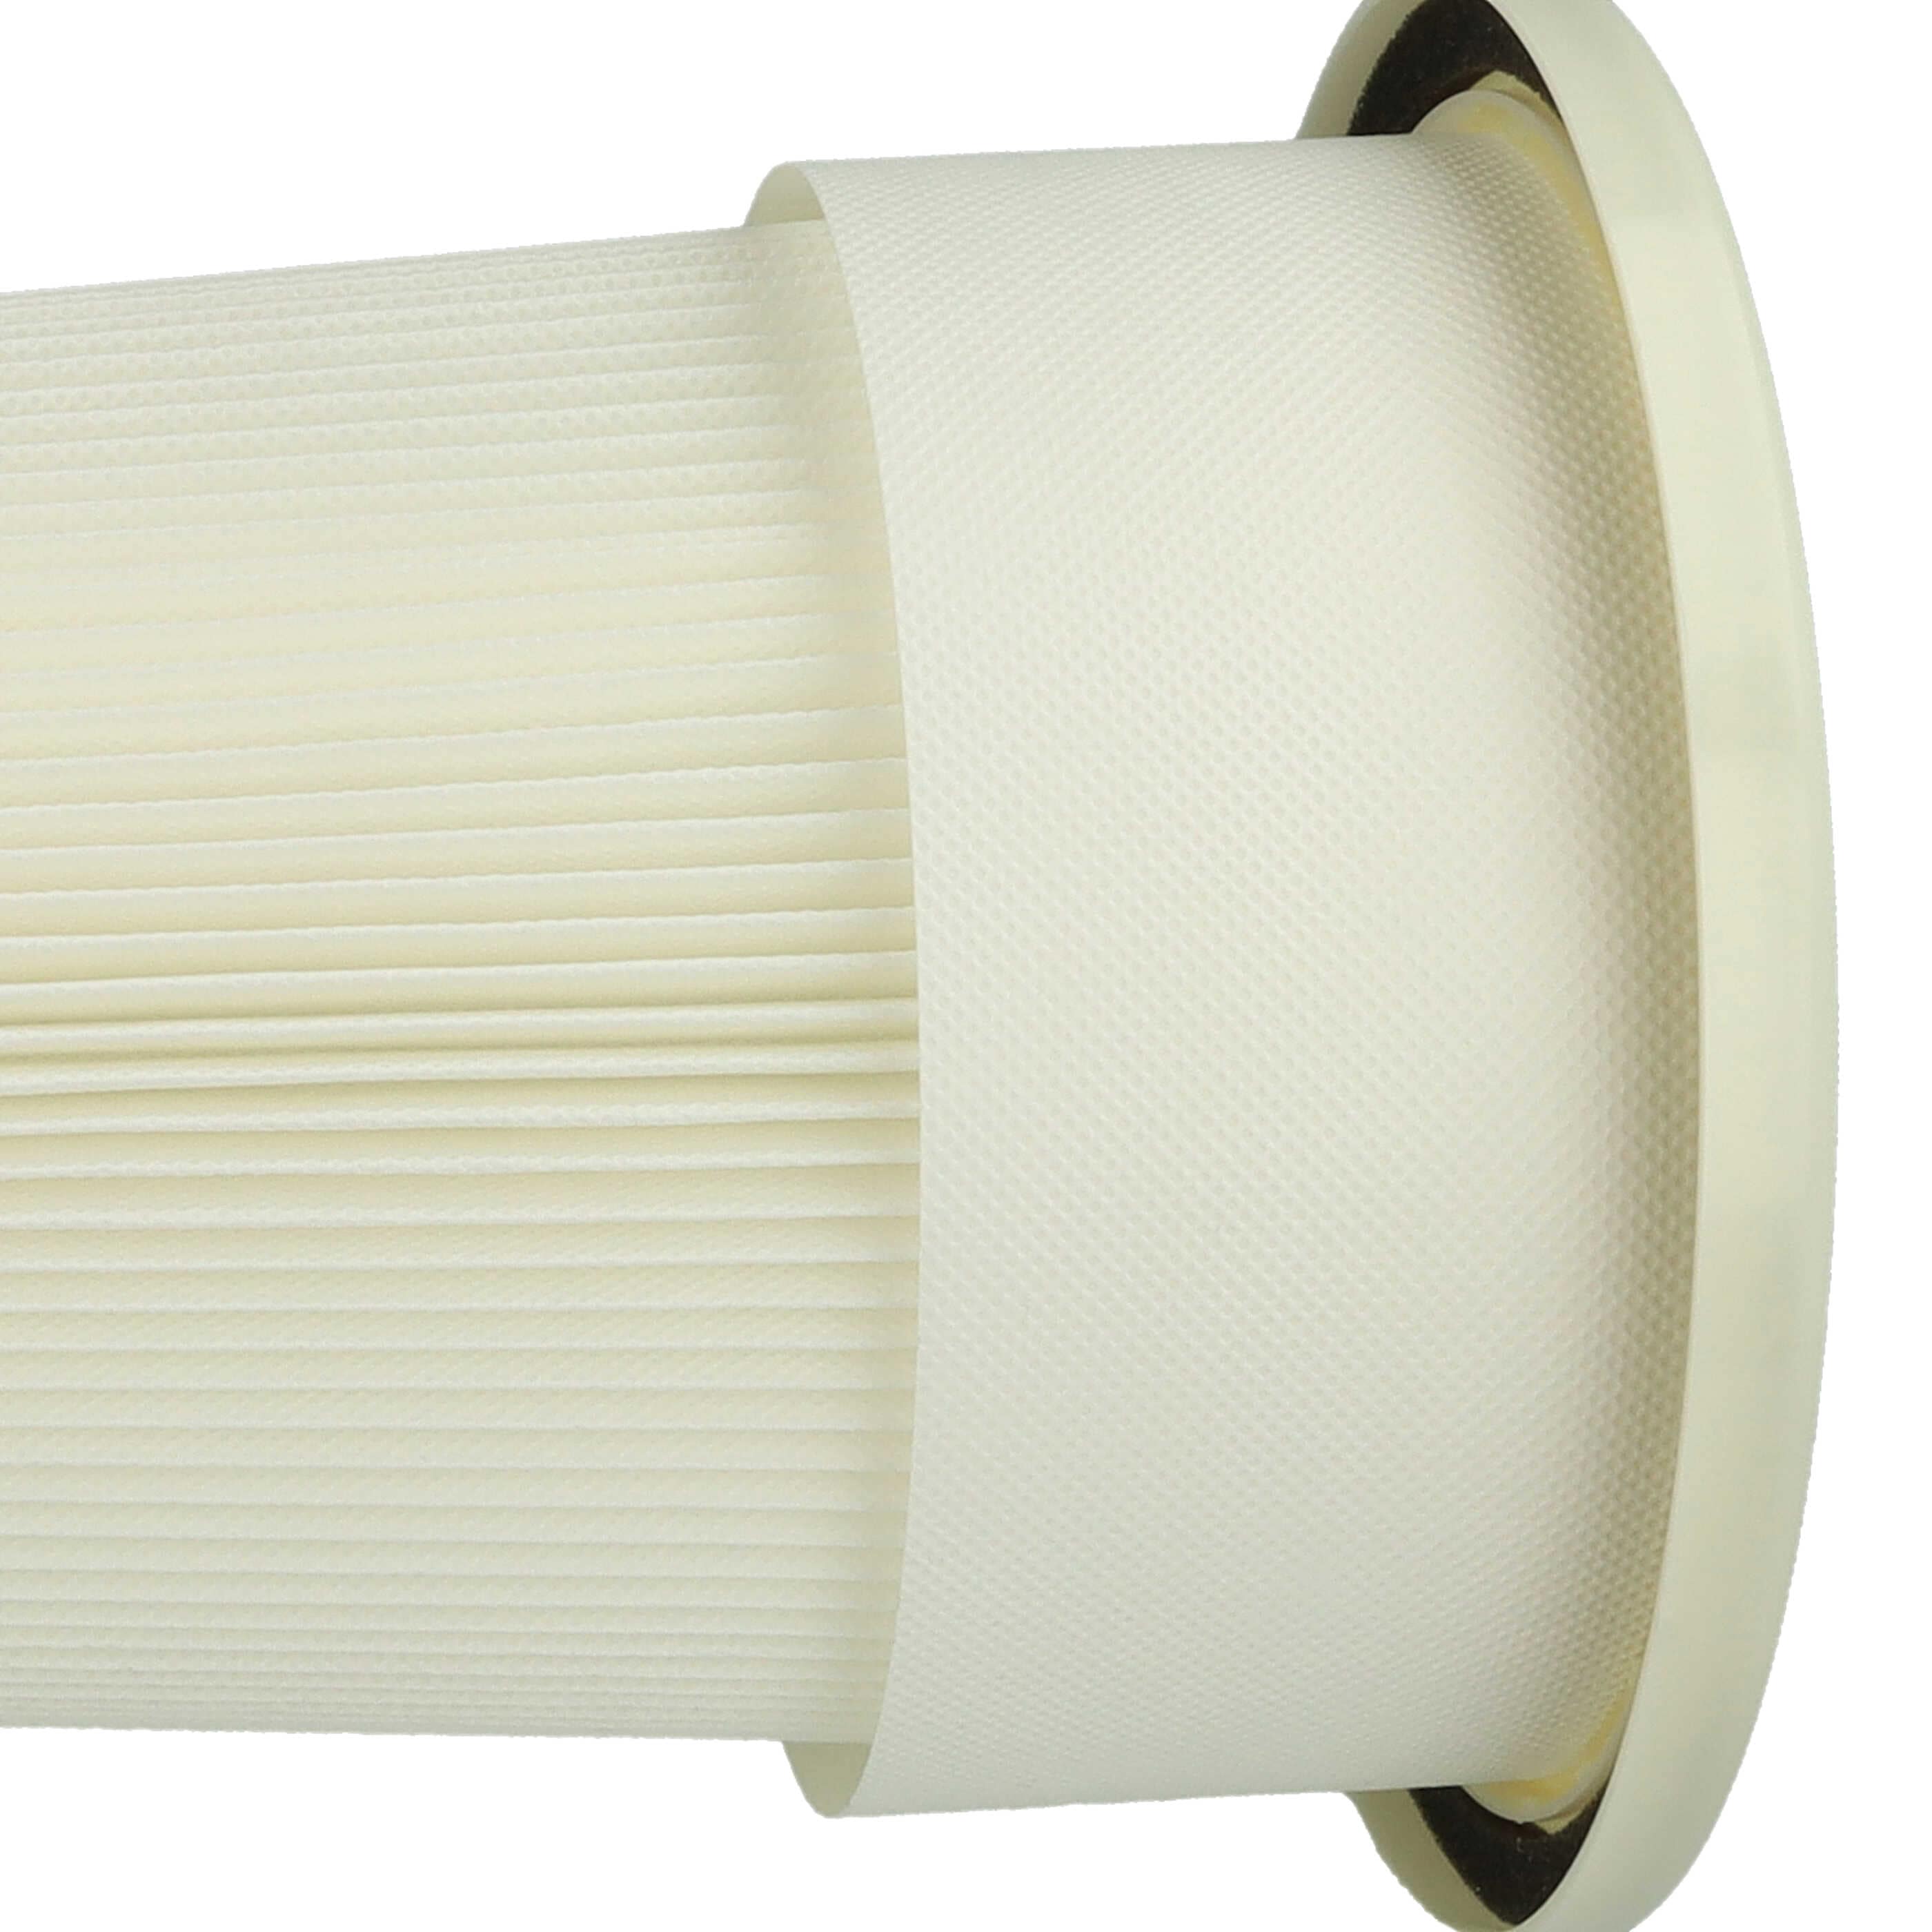 Feinfilter als Ersatz für Dustcontrol Staubsauger Filter 42028 - M Filter